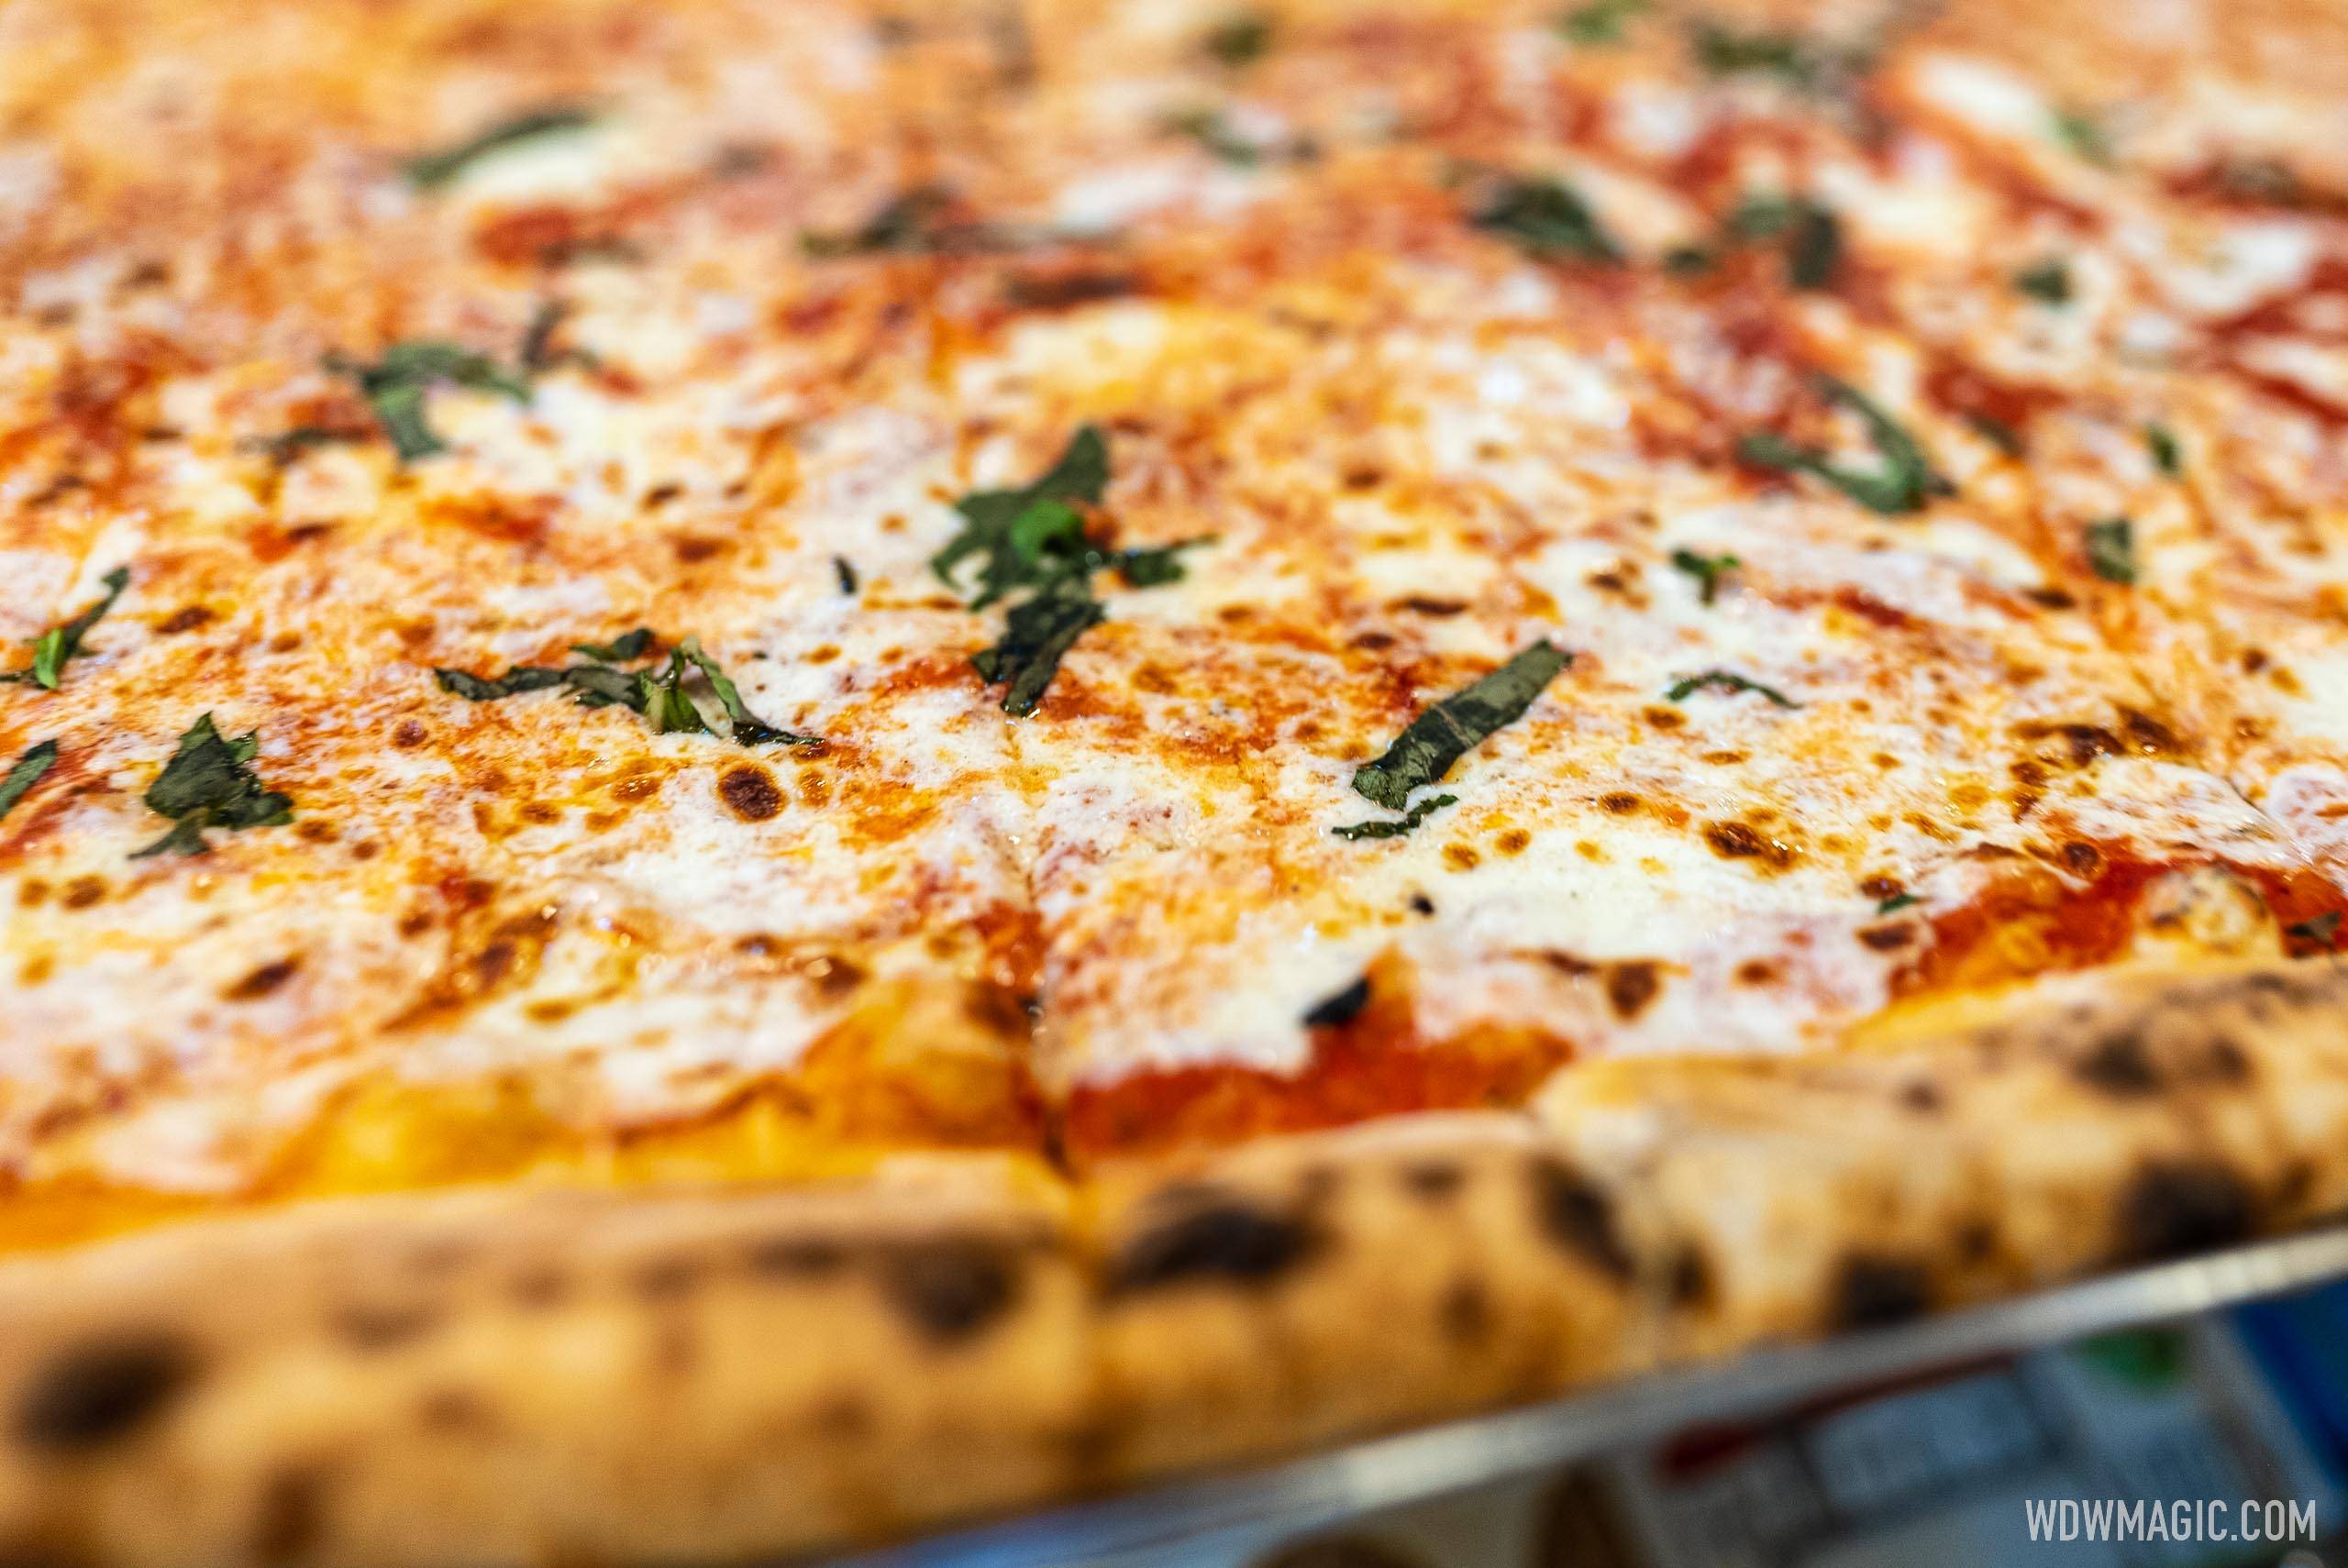 Via Napoli - Margherita Pizza - Pomadoro sauce, mozzarella cheese, basil